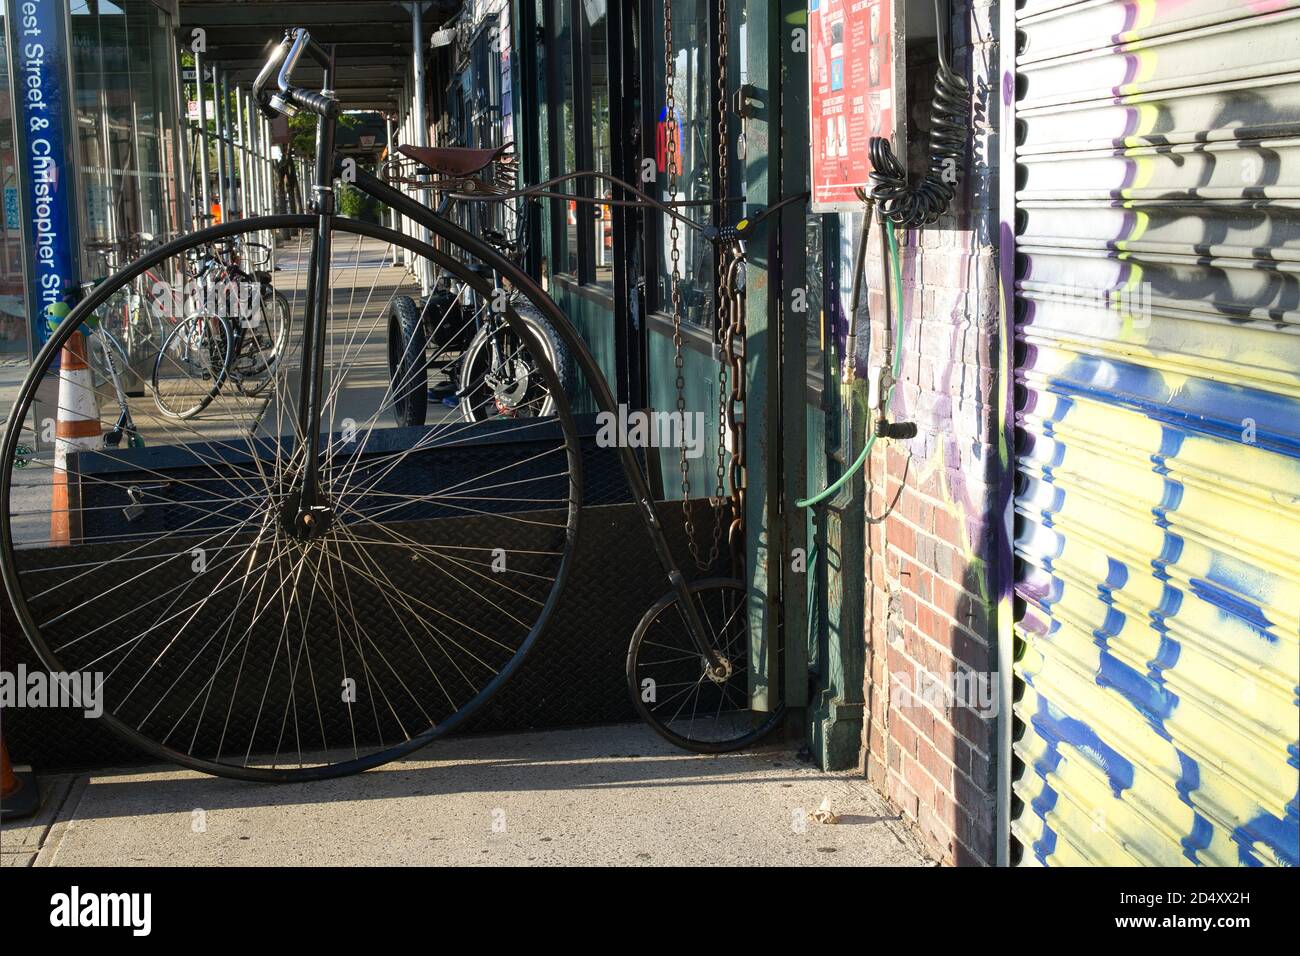 Antica bicicletta a ruota alta su una strada di Manhattan, adiacente ad un negozio di biciclette Foto Stock